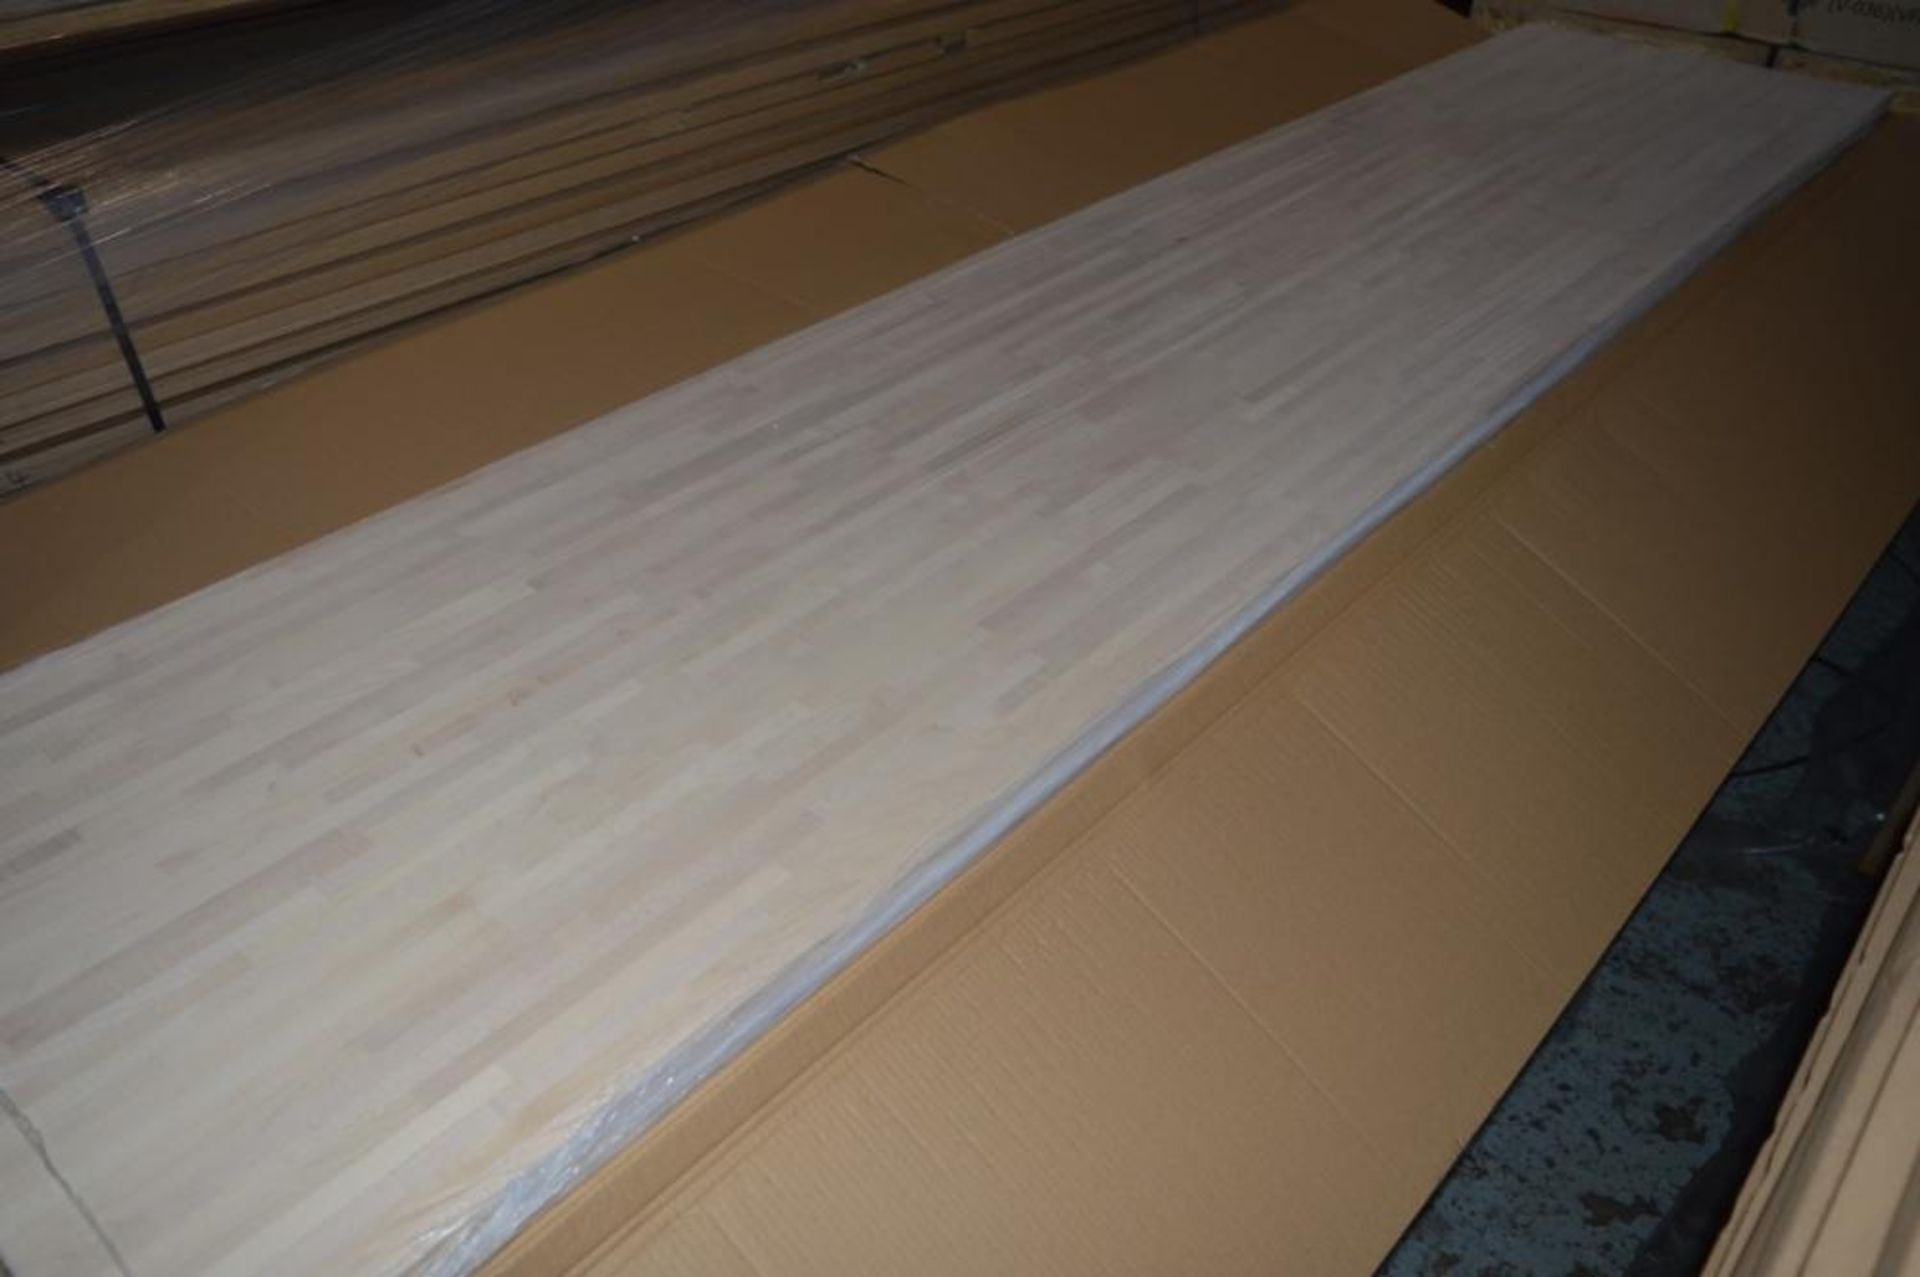 1 x Solid Wood Kitchen Worktop - EUROPEAN MAPLE - Maple Blockwood Kitchen Worktop - Size: 4000 x 650 - Image 2 of 5